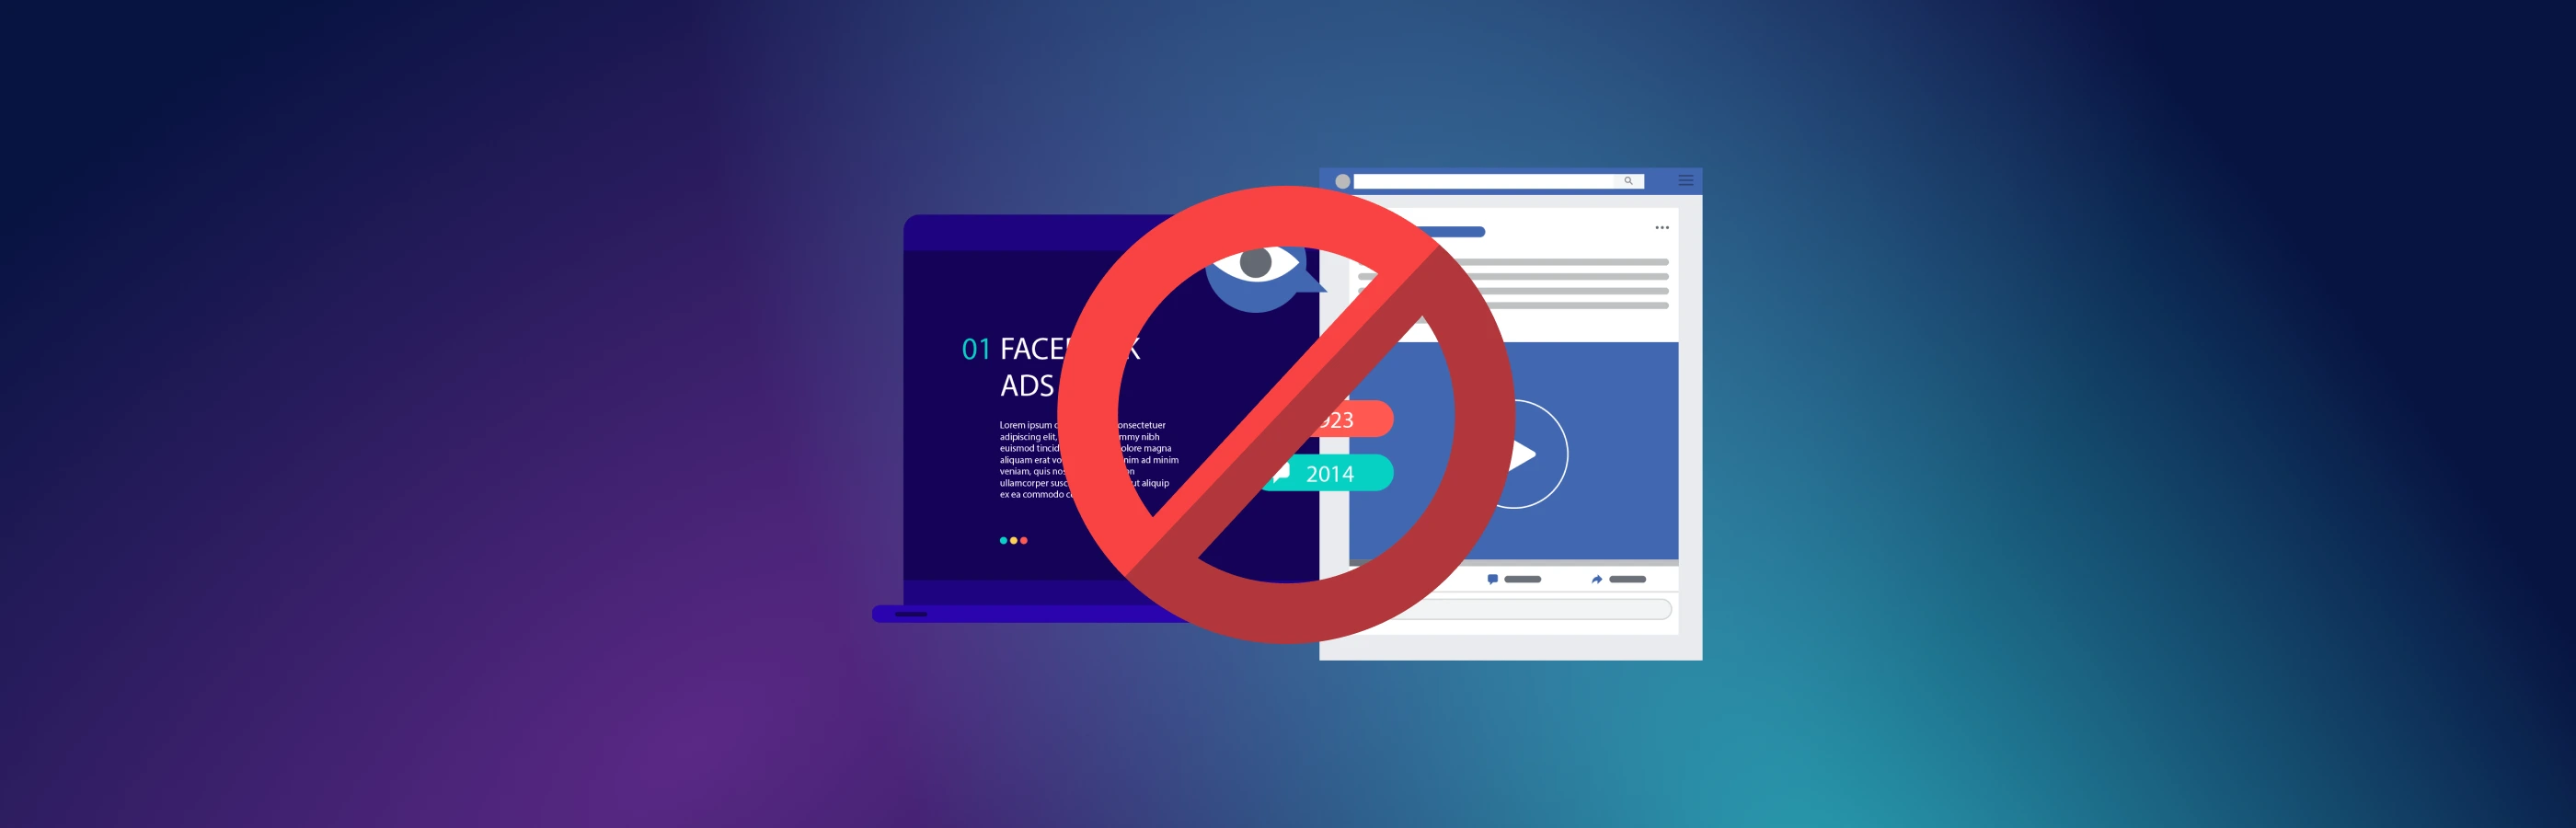 Palavras-chave no Facebook: como evitar bloqueios e fortalecer o perfil